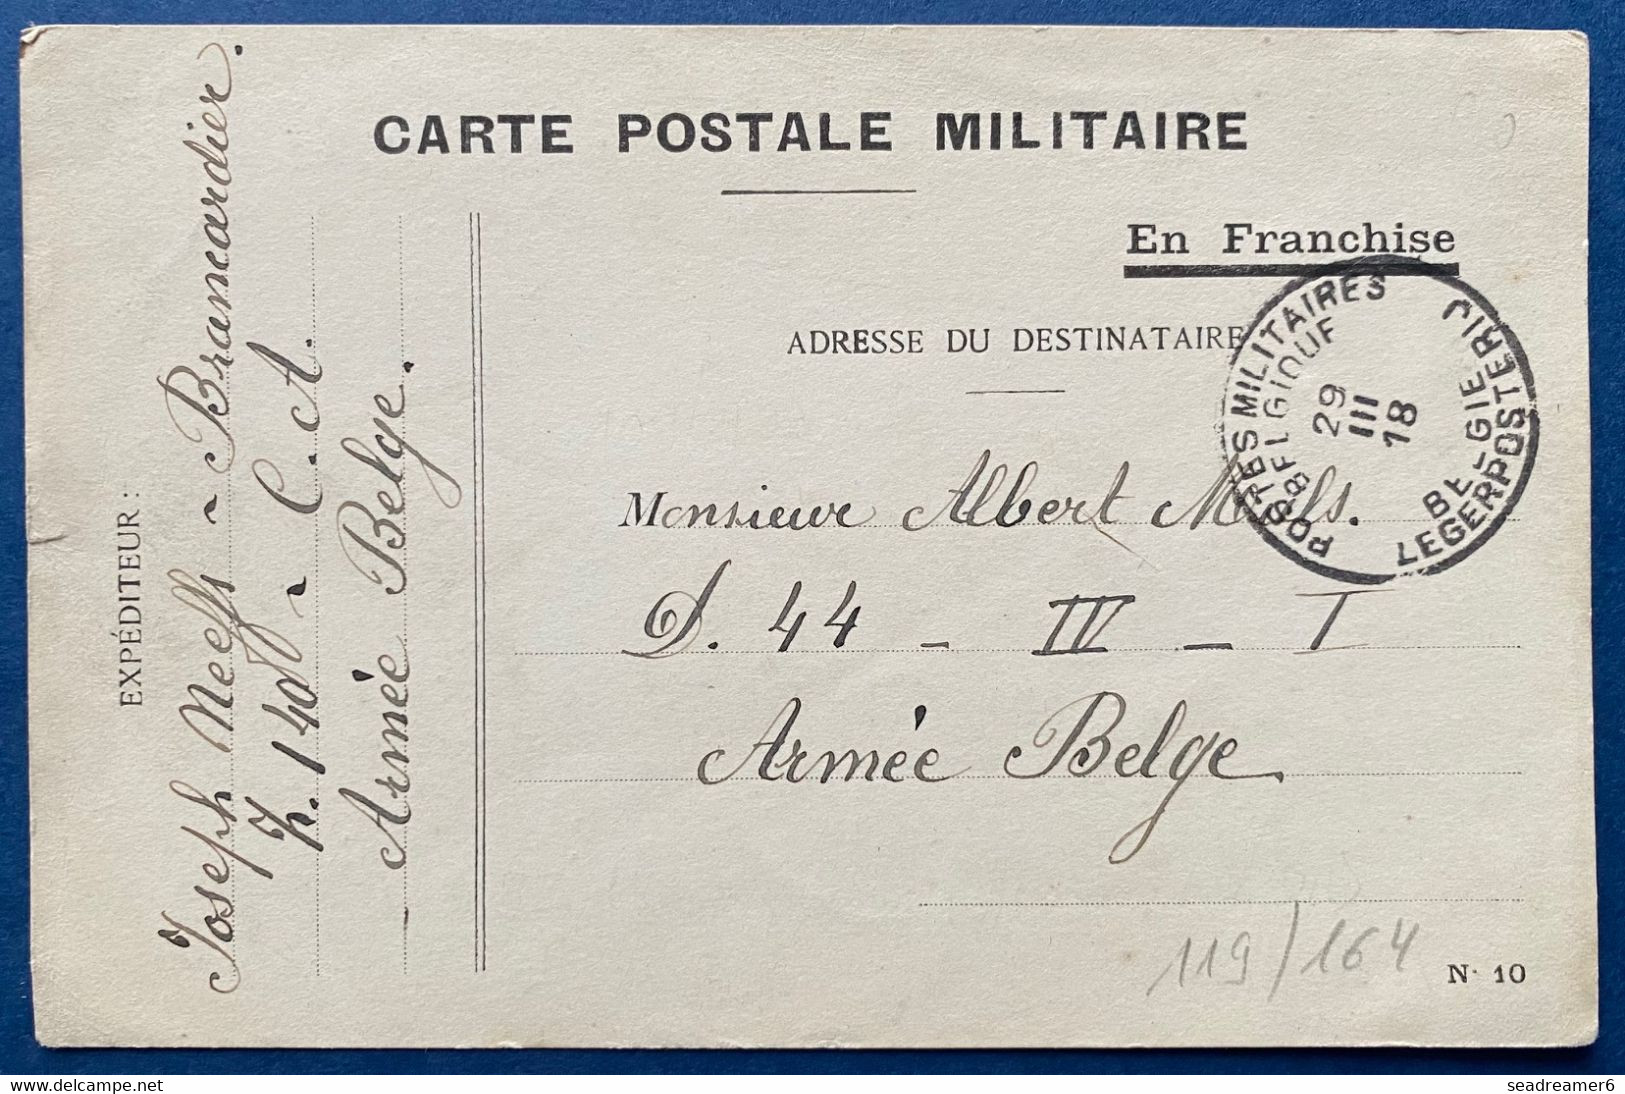 Carte Postale Militaire En Franchise Type N°10 Obl Dateur 29 Mars 1918 Postes Militaires Belgique PMB Pour Un Soldat TTB - Belgisch Leger